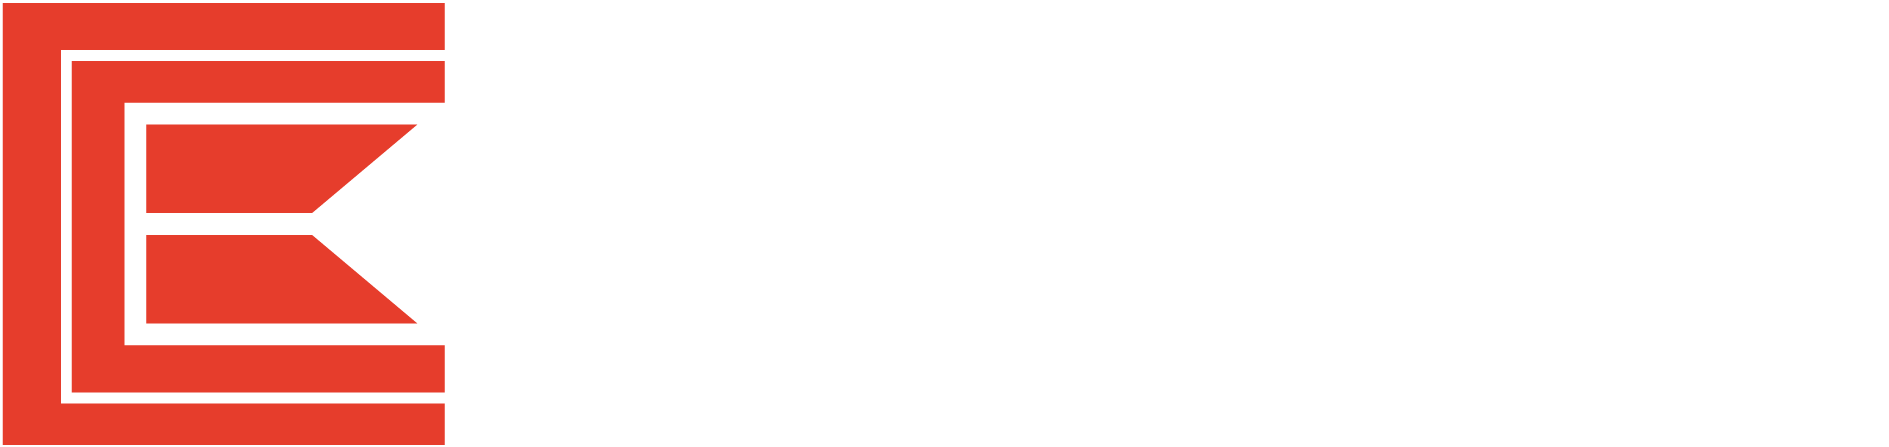 Easyknit-logo